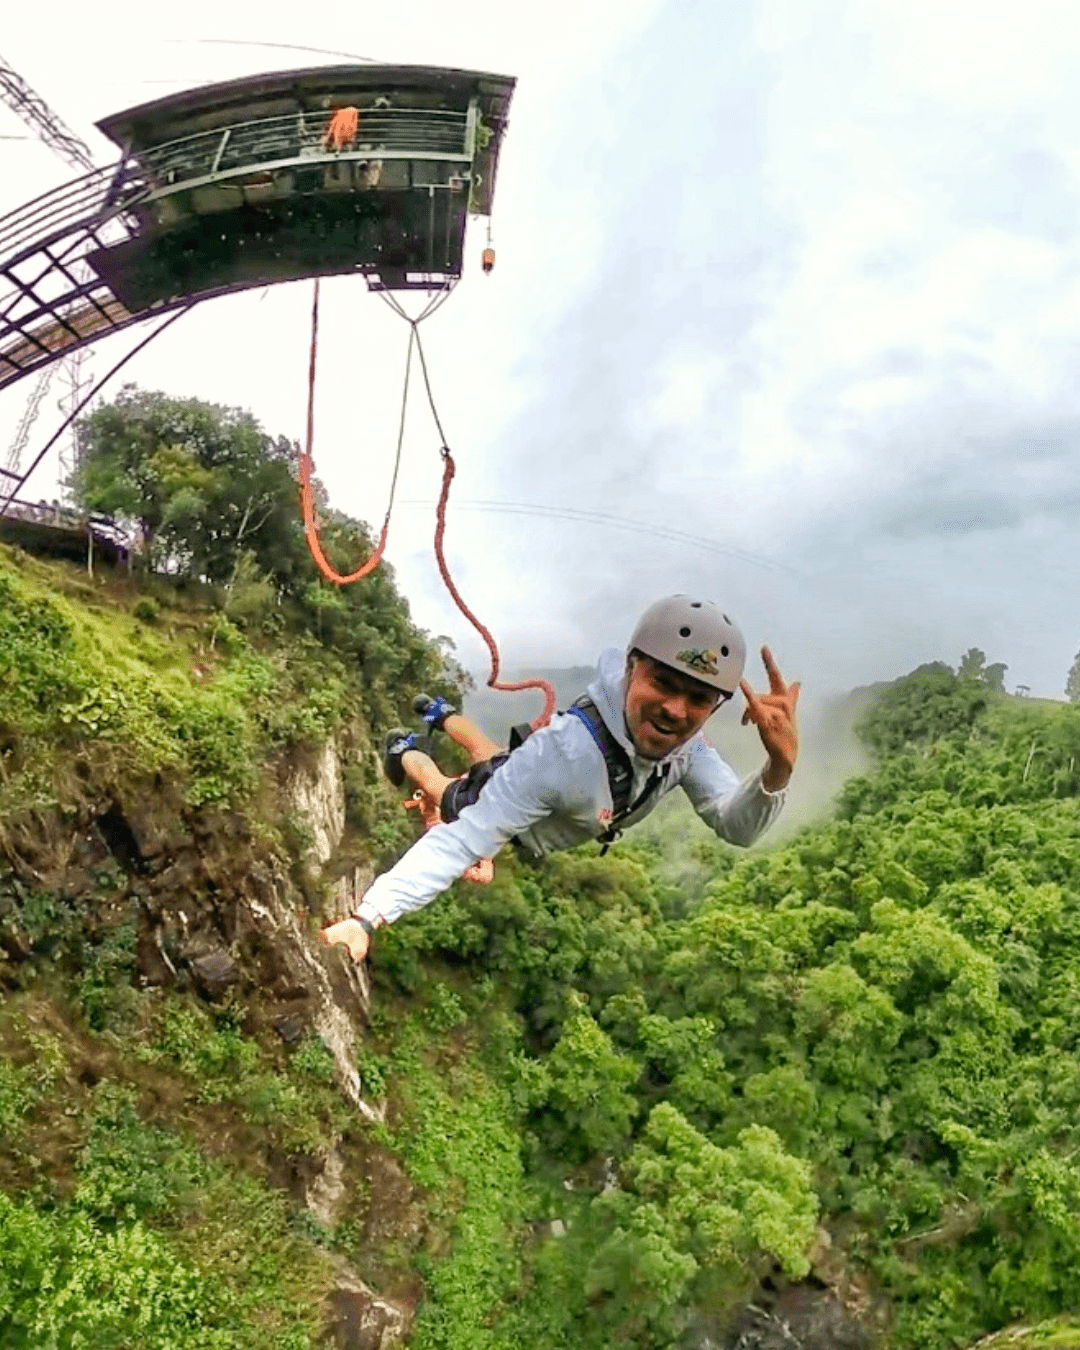 Bungee Jump 65 m – Cia Aventura